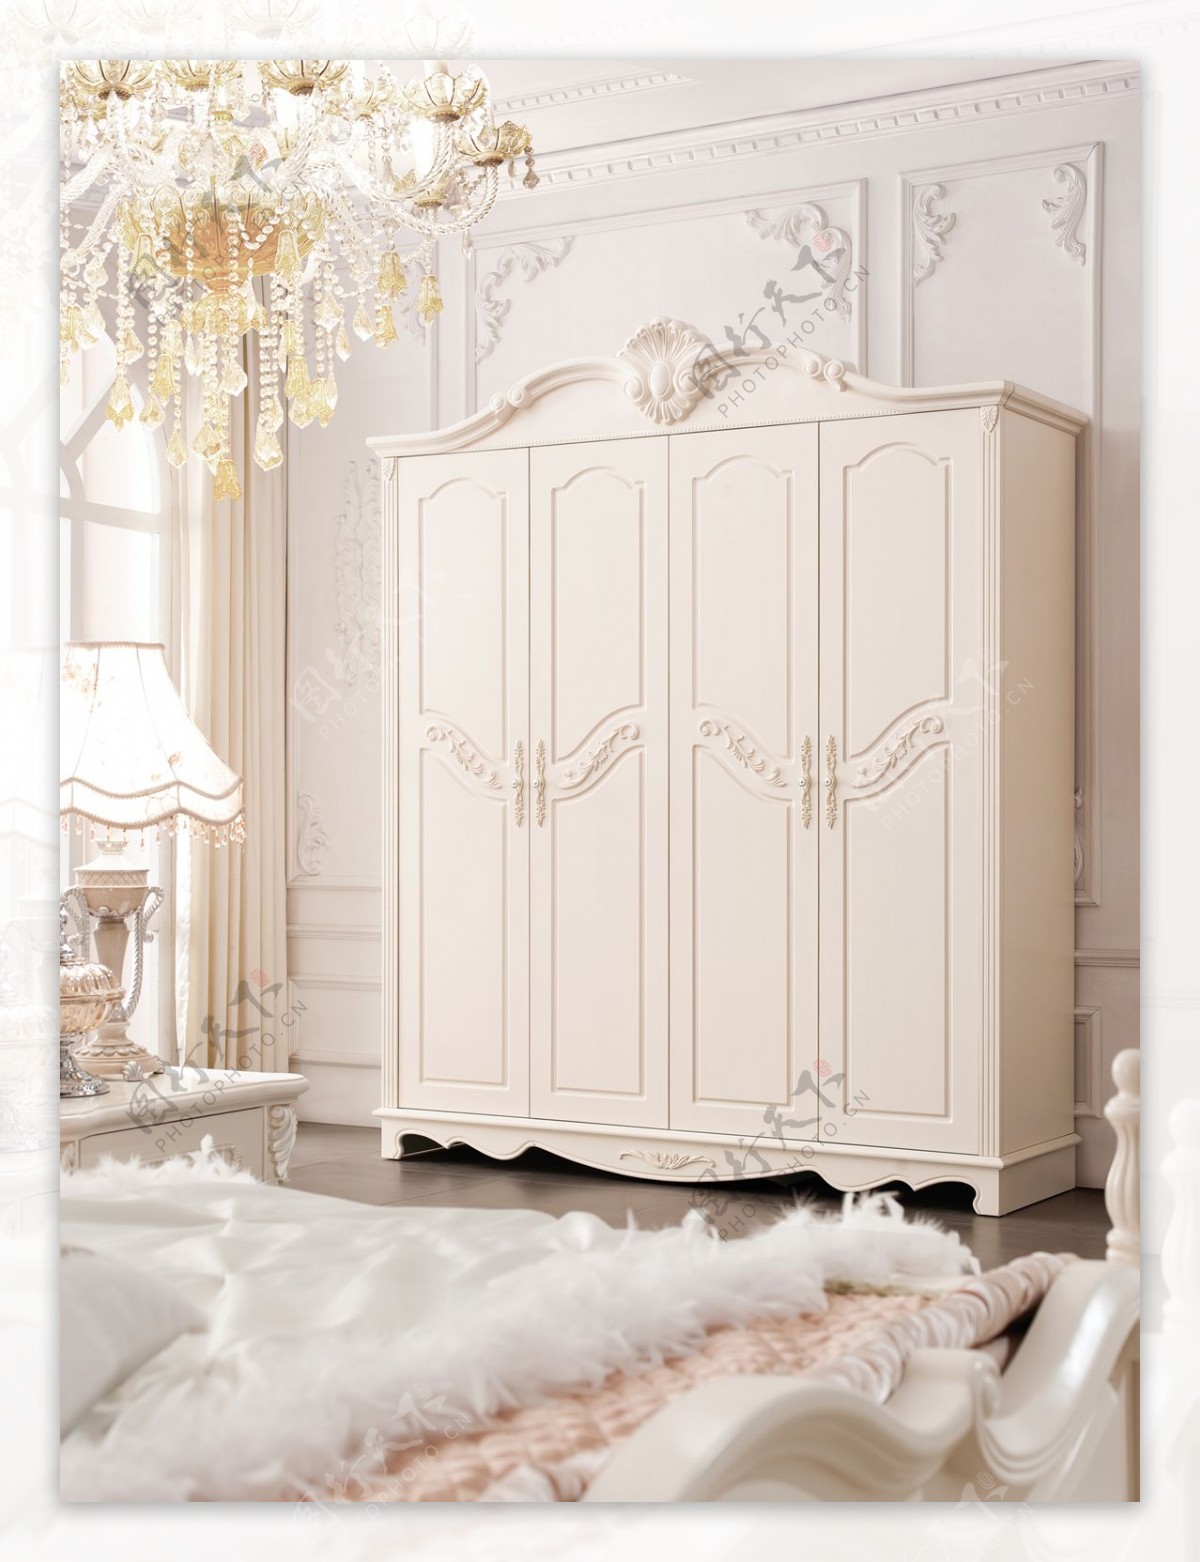 法式家具图片欧式衣柜